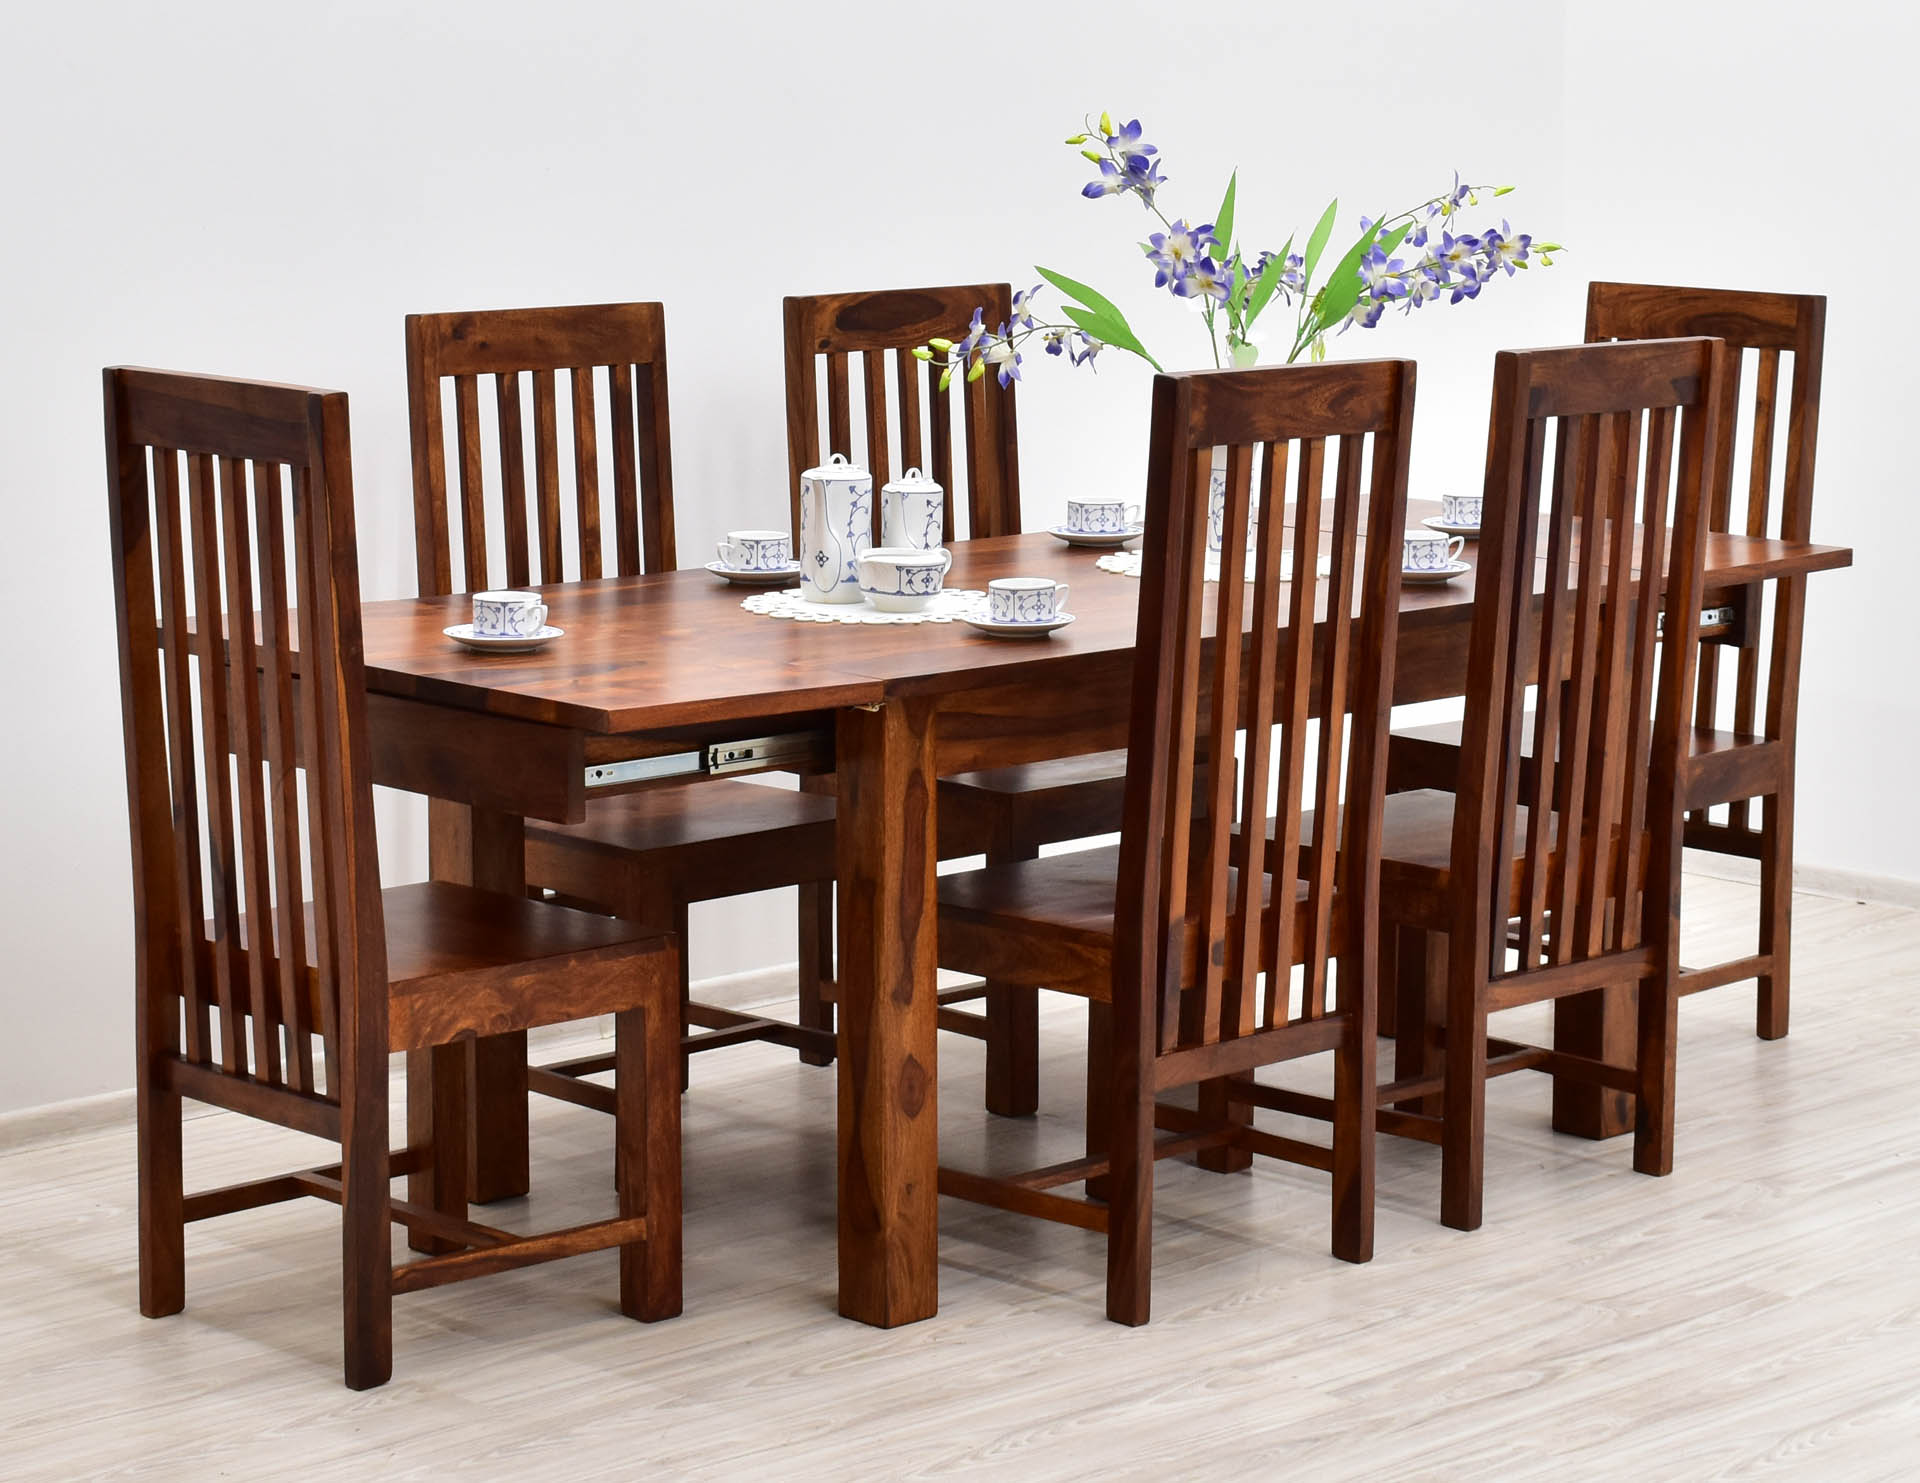 komplet-obiadowy-kolonialny-stol-rozkladany-6-krzesel-lite-drewno-palisander-miodowy-braz-modernistyczny